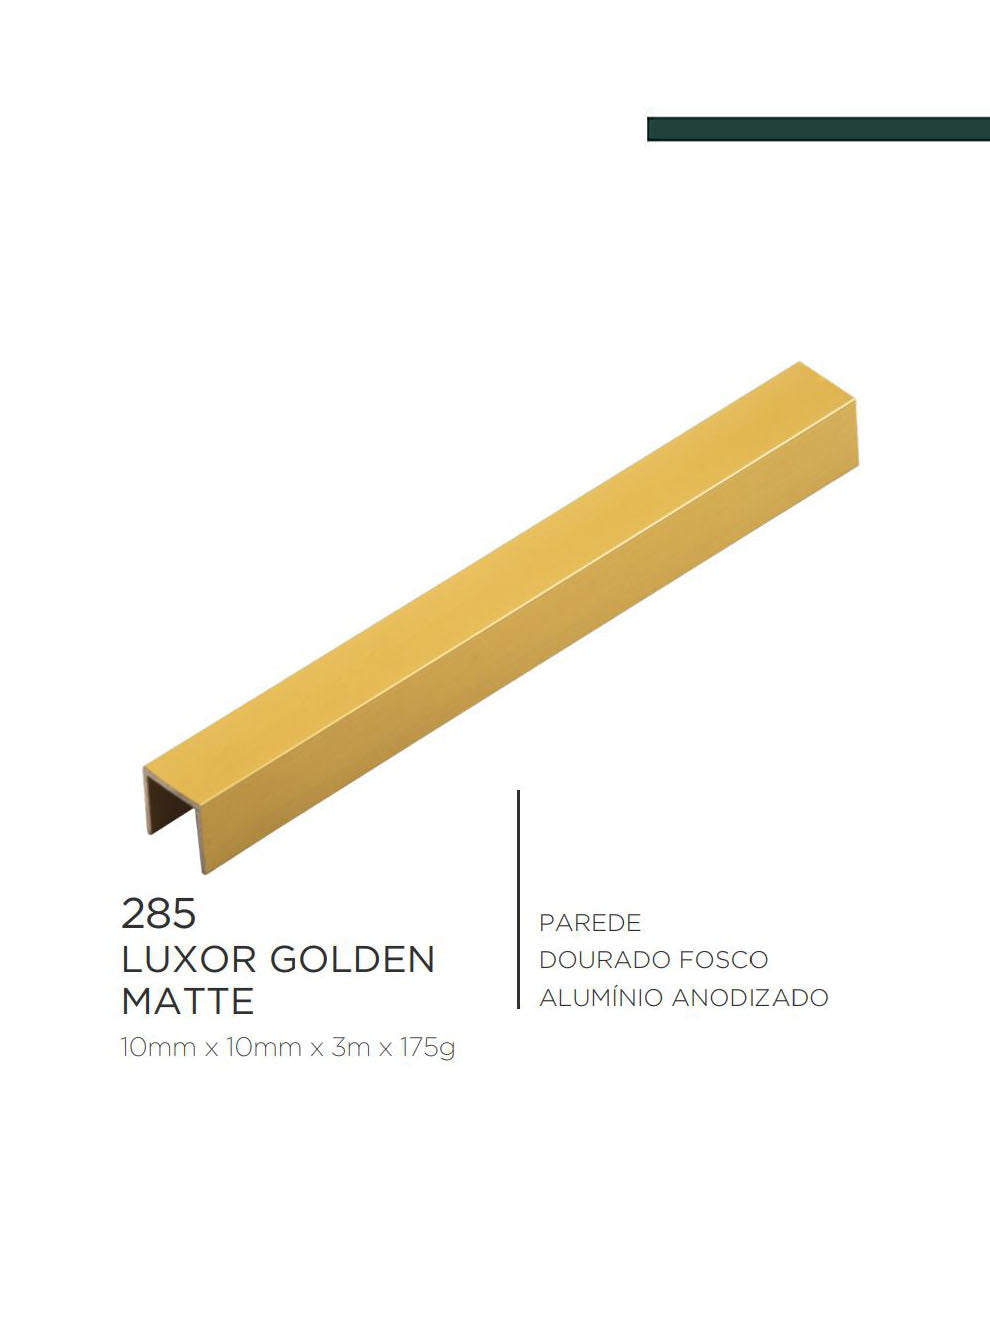 Viscardi - Perfil Luxor Golden Matte 285 Dourado Fosco - 10mm x 10mm x 3m - (5 peças)